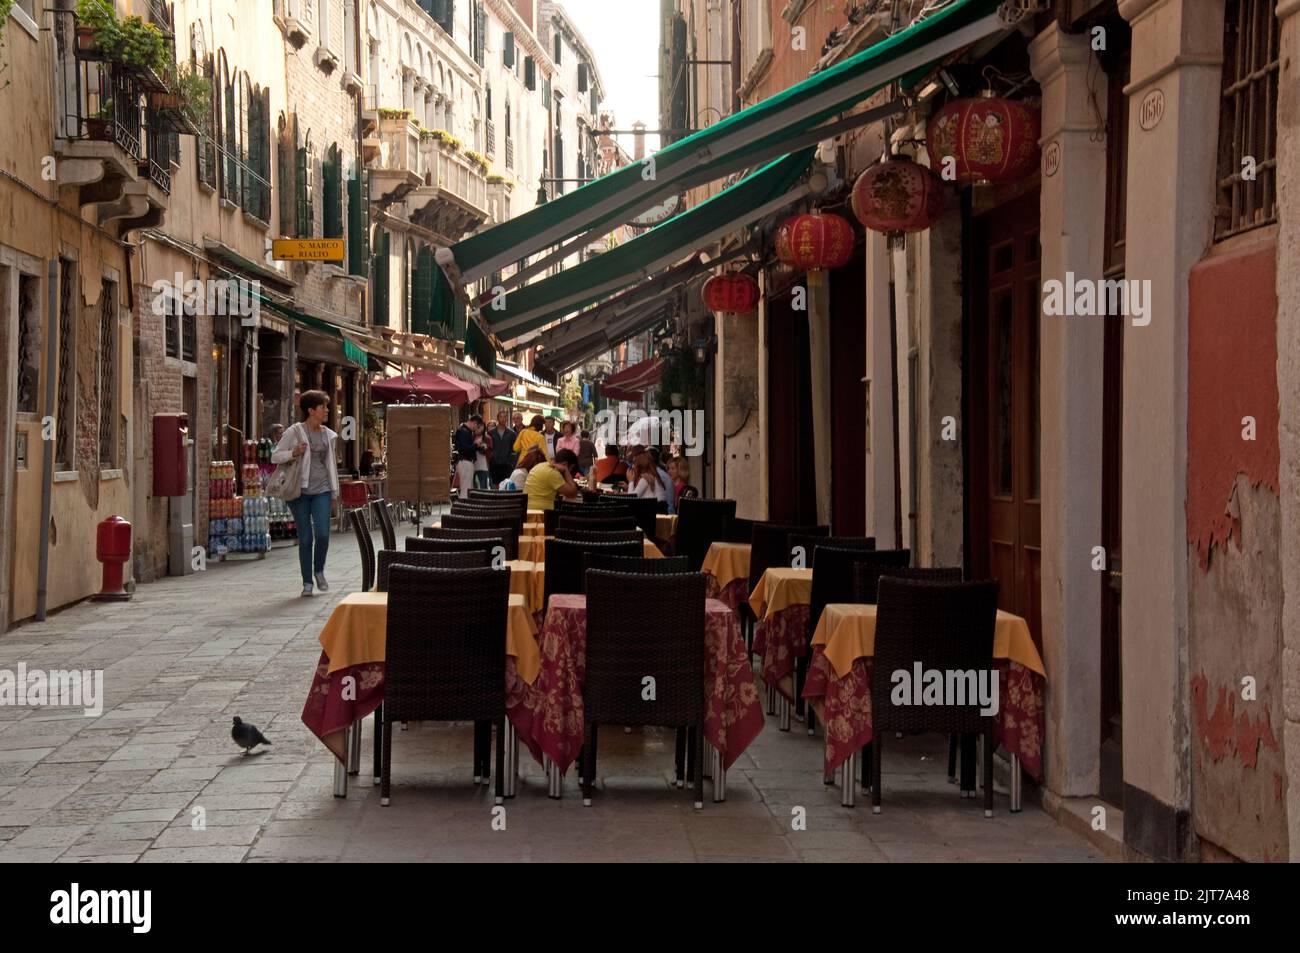 Scène de rue, Venise, Italie. Rue étroite avec un café sur le trottoir et  des gens qui marchent. Lanternes chinoises; restaurant chinois Photo Stock  - Alamy